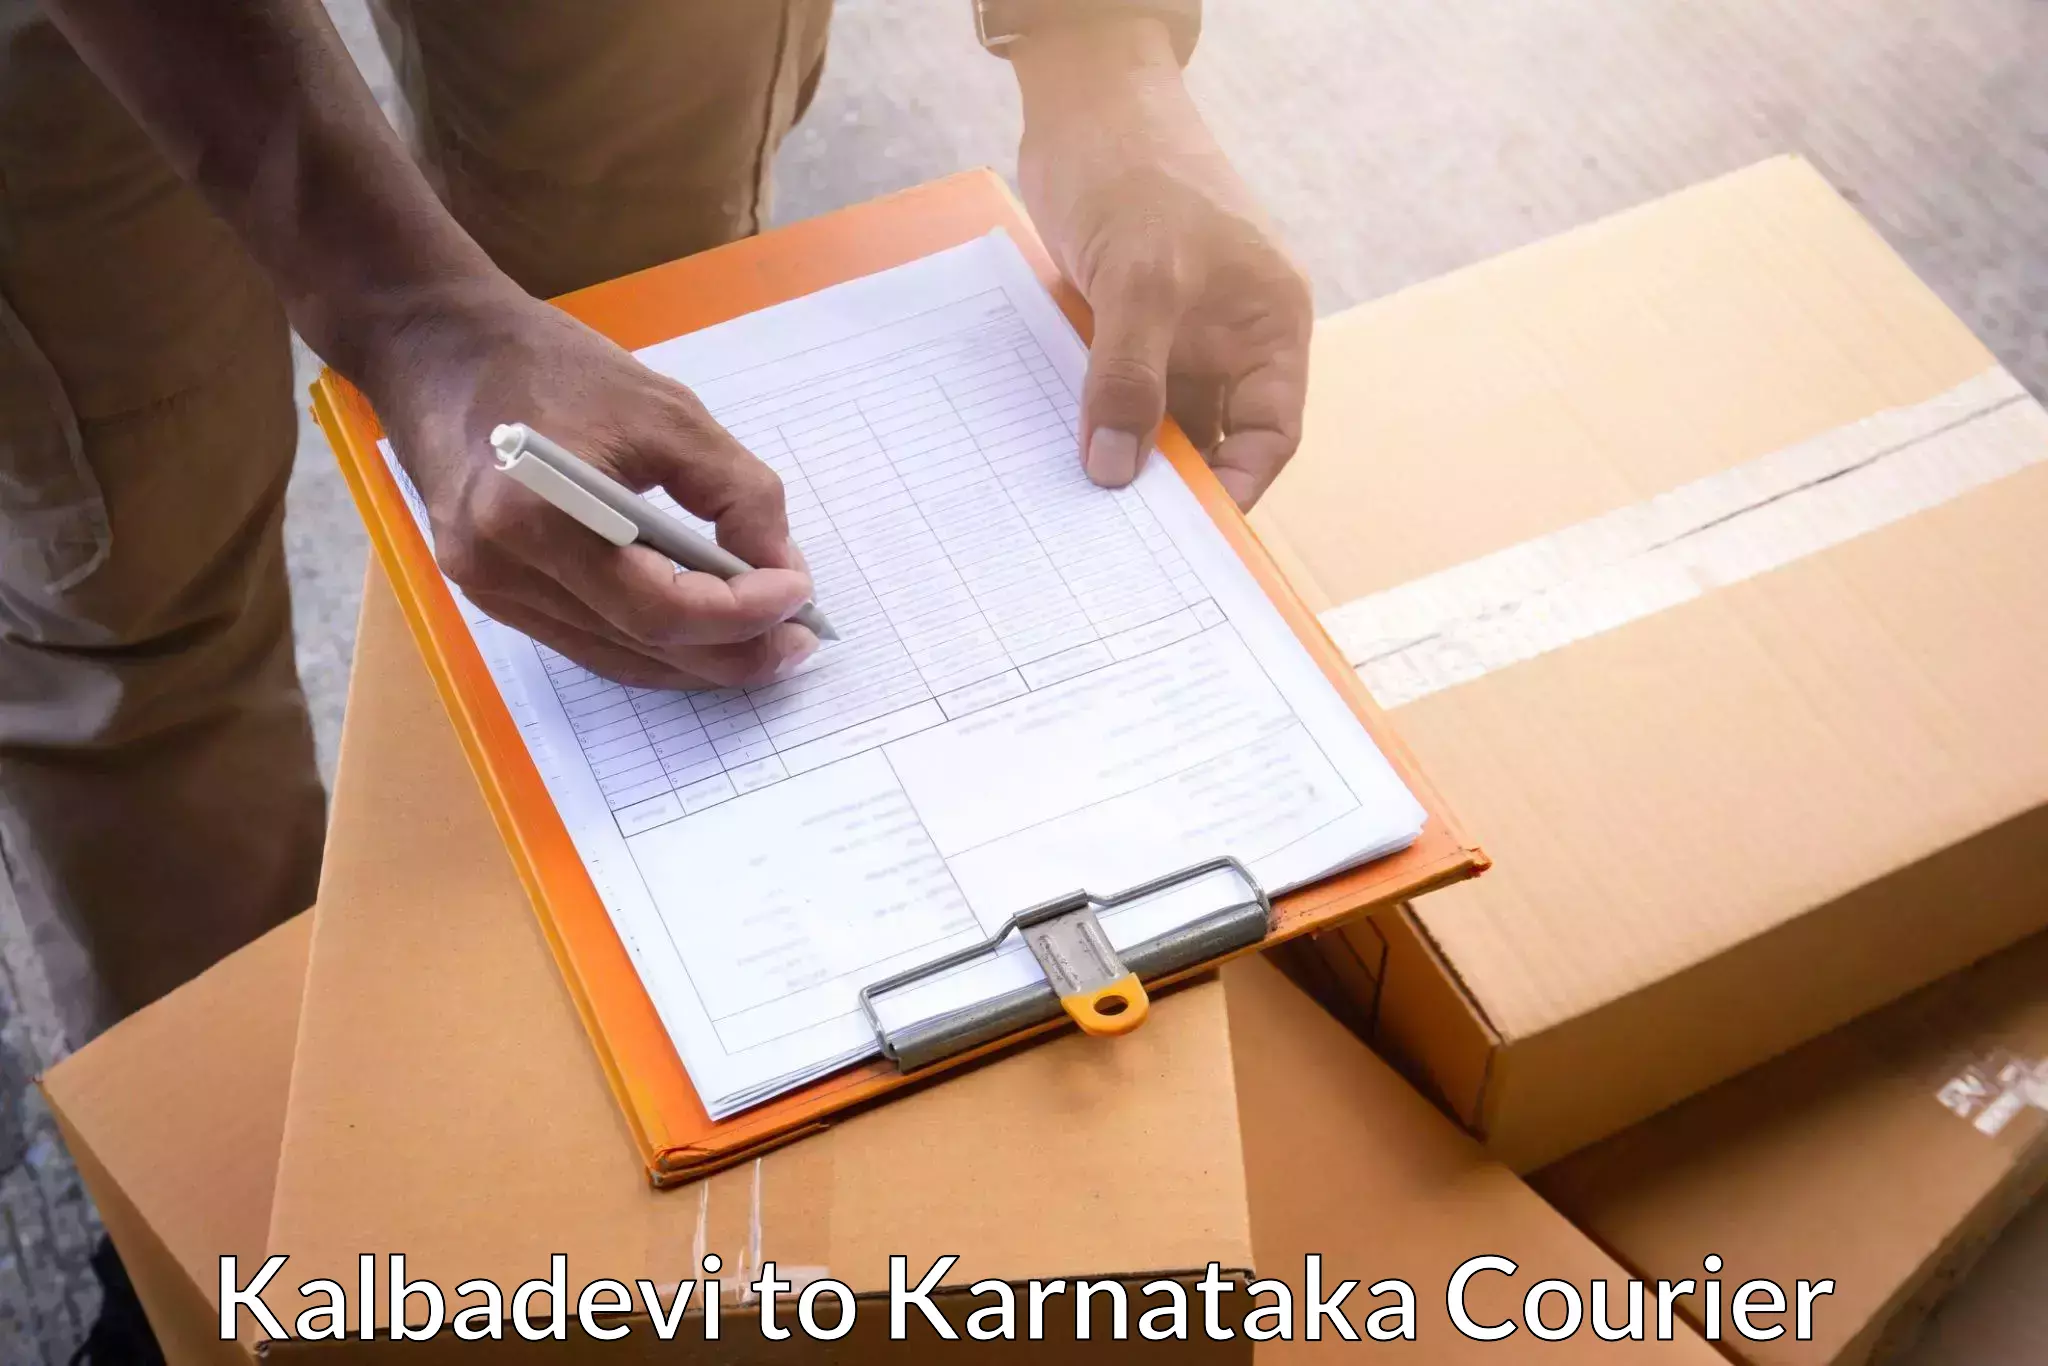 Comprehensive parcel tracking Kalbadevi to Tiptur